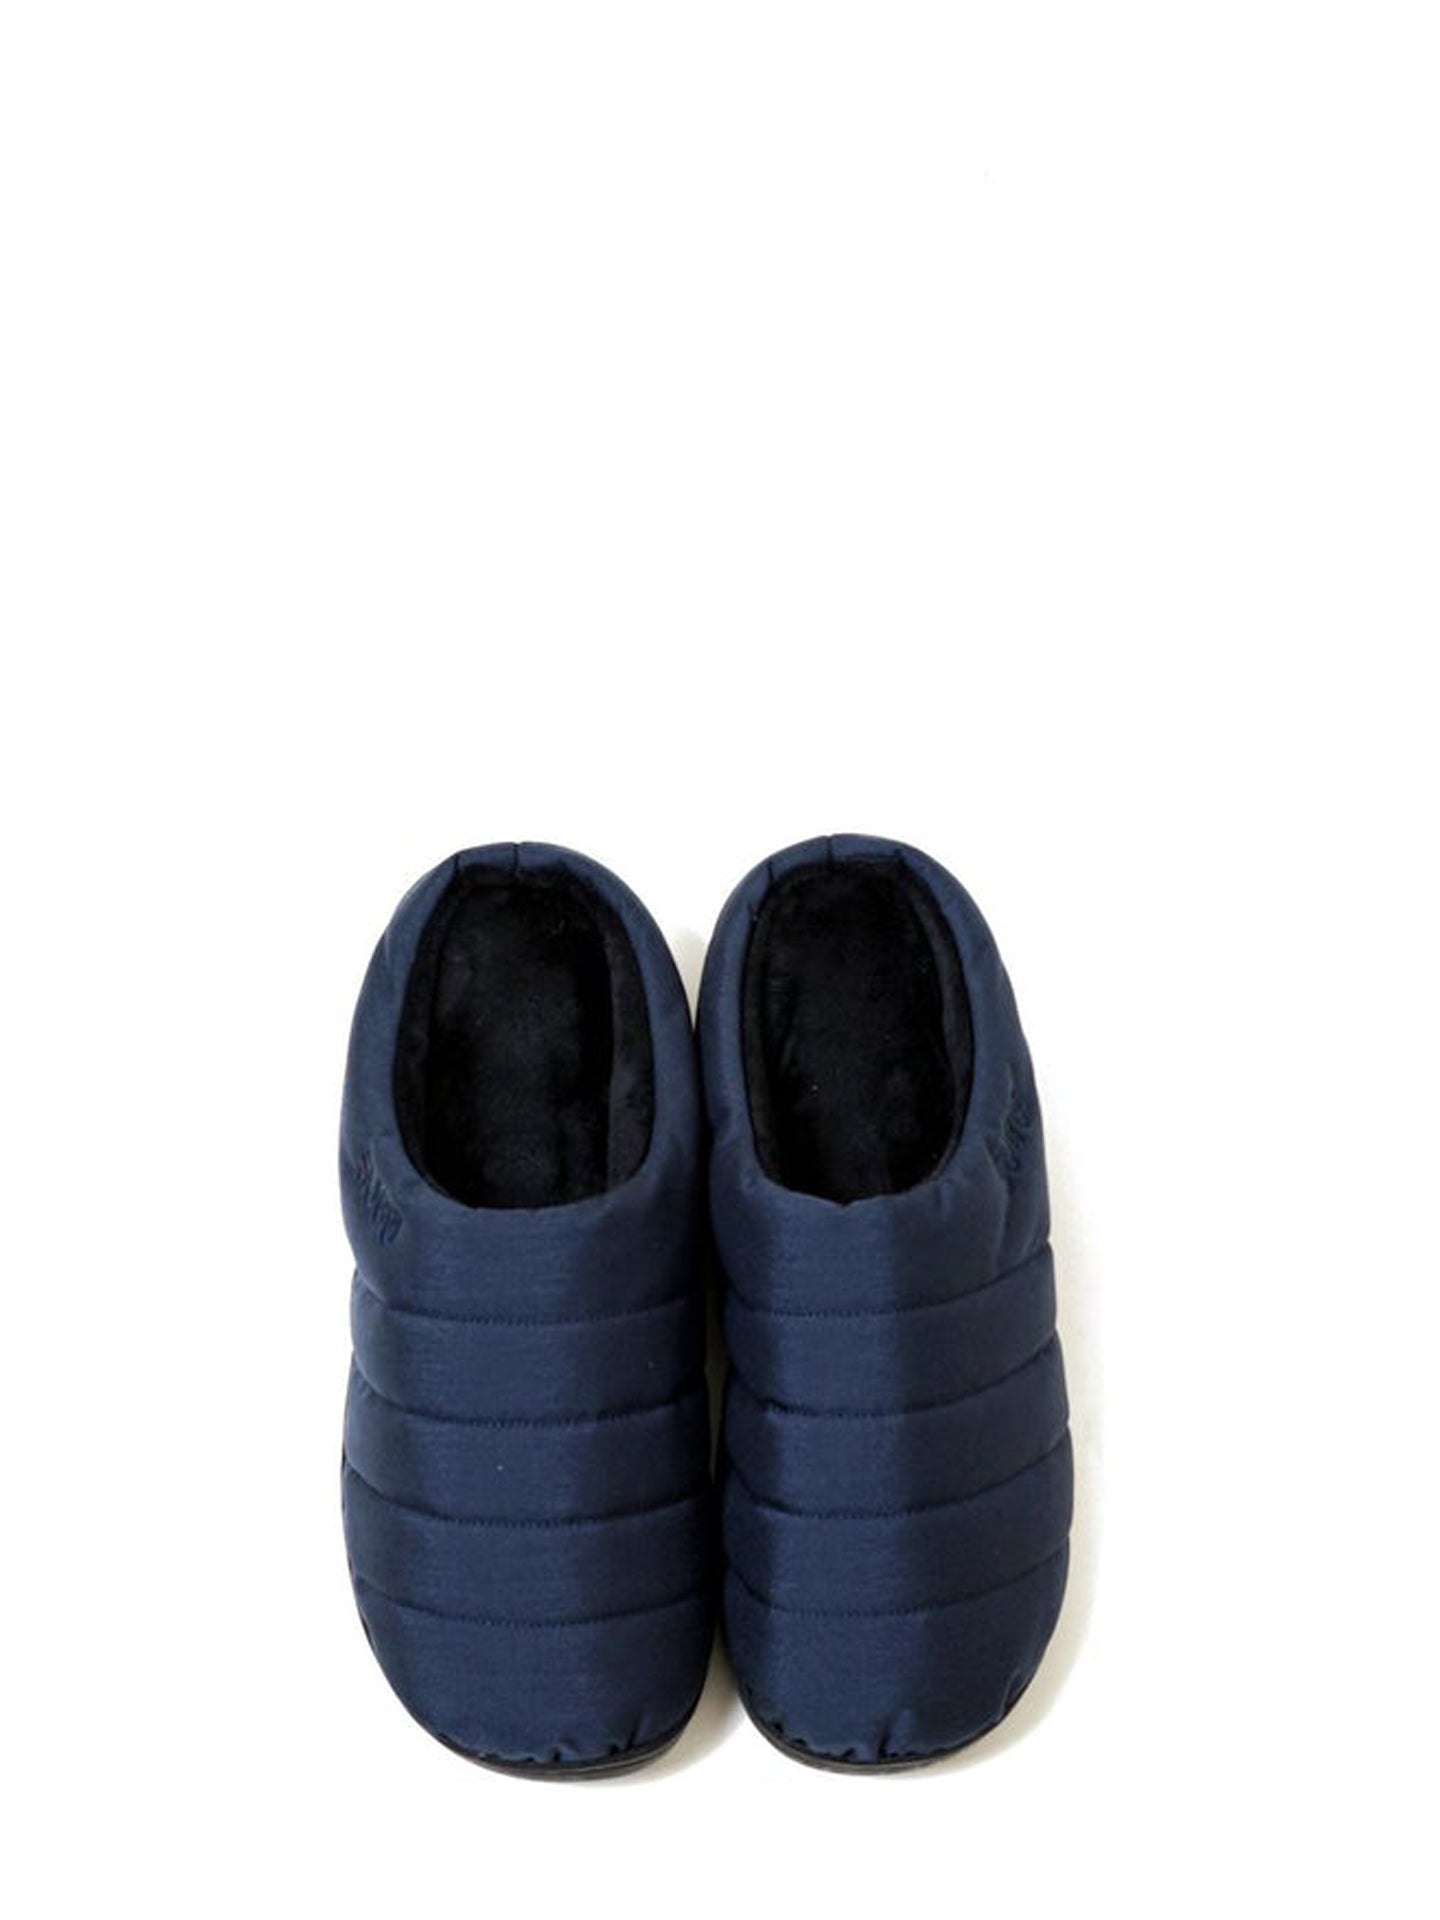 Subu Nannen puffer slippers, navy